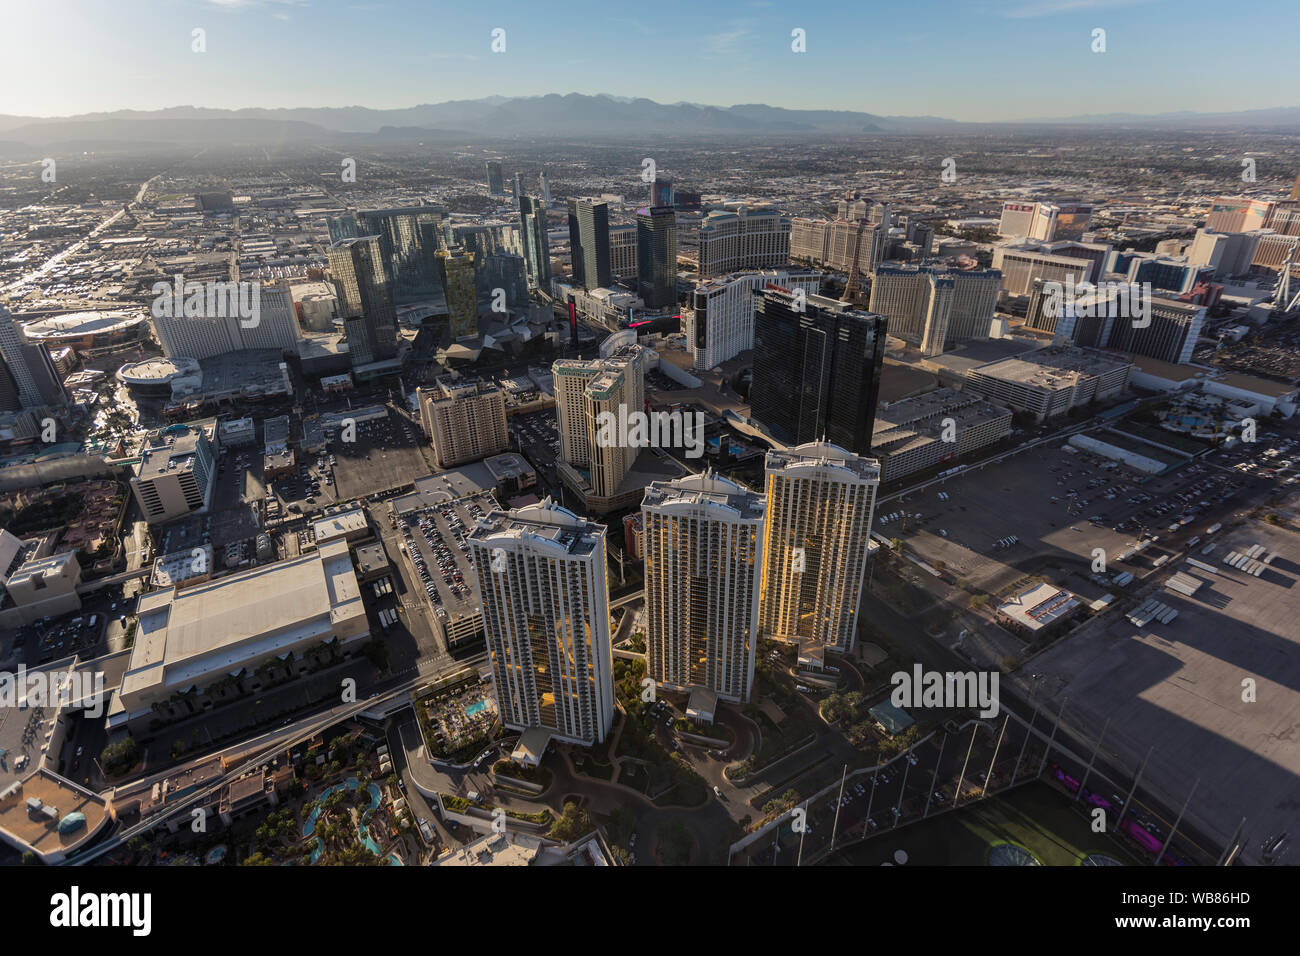 Las Vegas, Nevada, USA - 13. März 2017: Luftaufnahme von Signature at MGM, Hilton Grand Vacations und anderen Resort Towers in der Nähe des Las Vegas Strip. Stockfoto